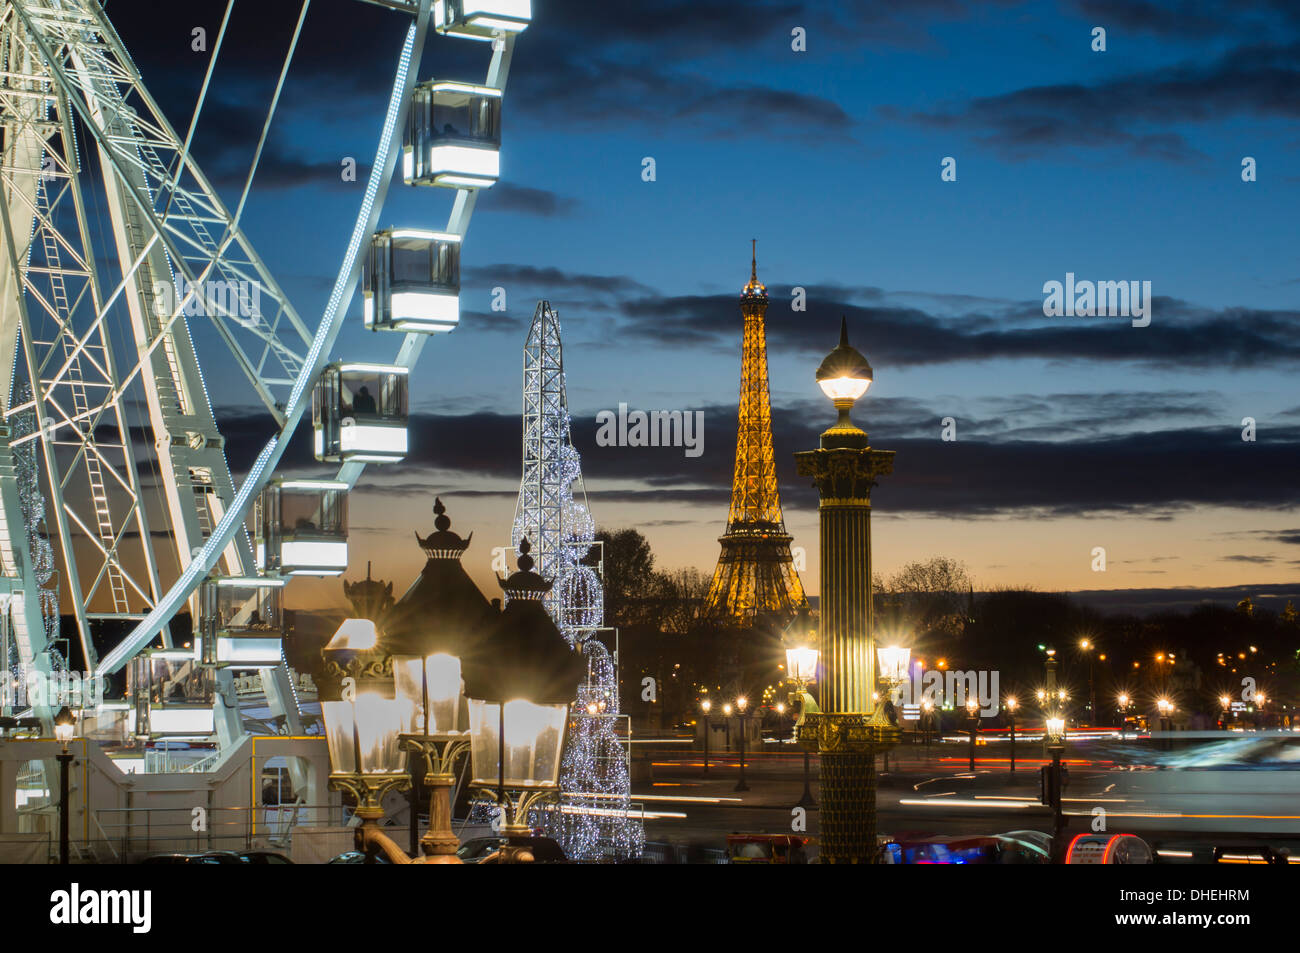 Poue de Paris, Place de la Concorde and Eiffel Tower, Paris, France, Europe Stock Photo